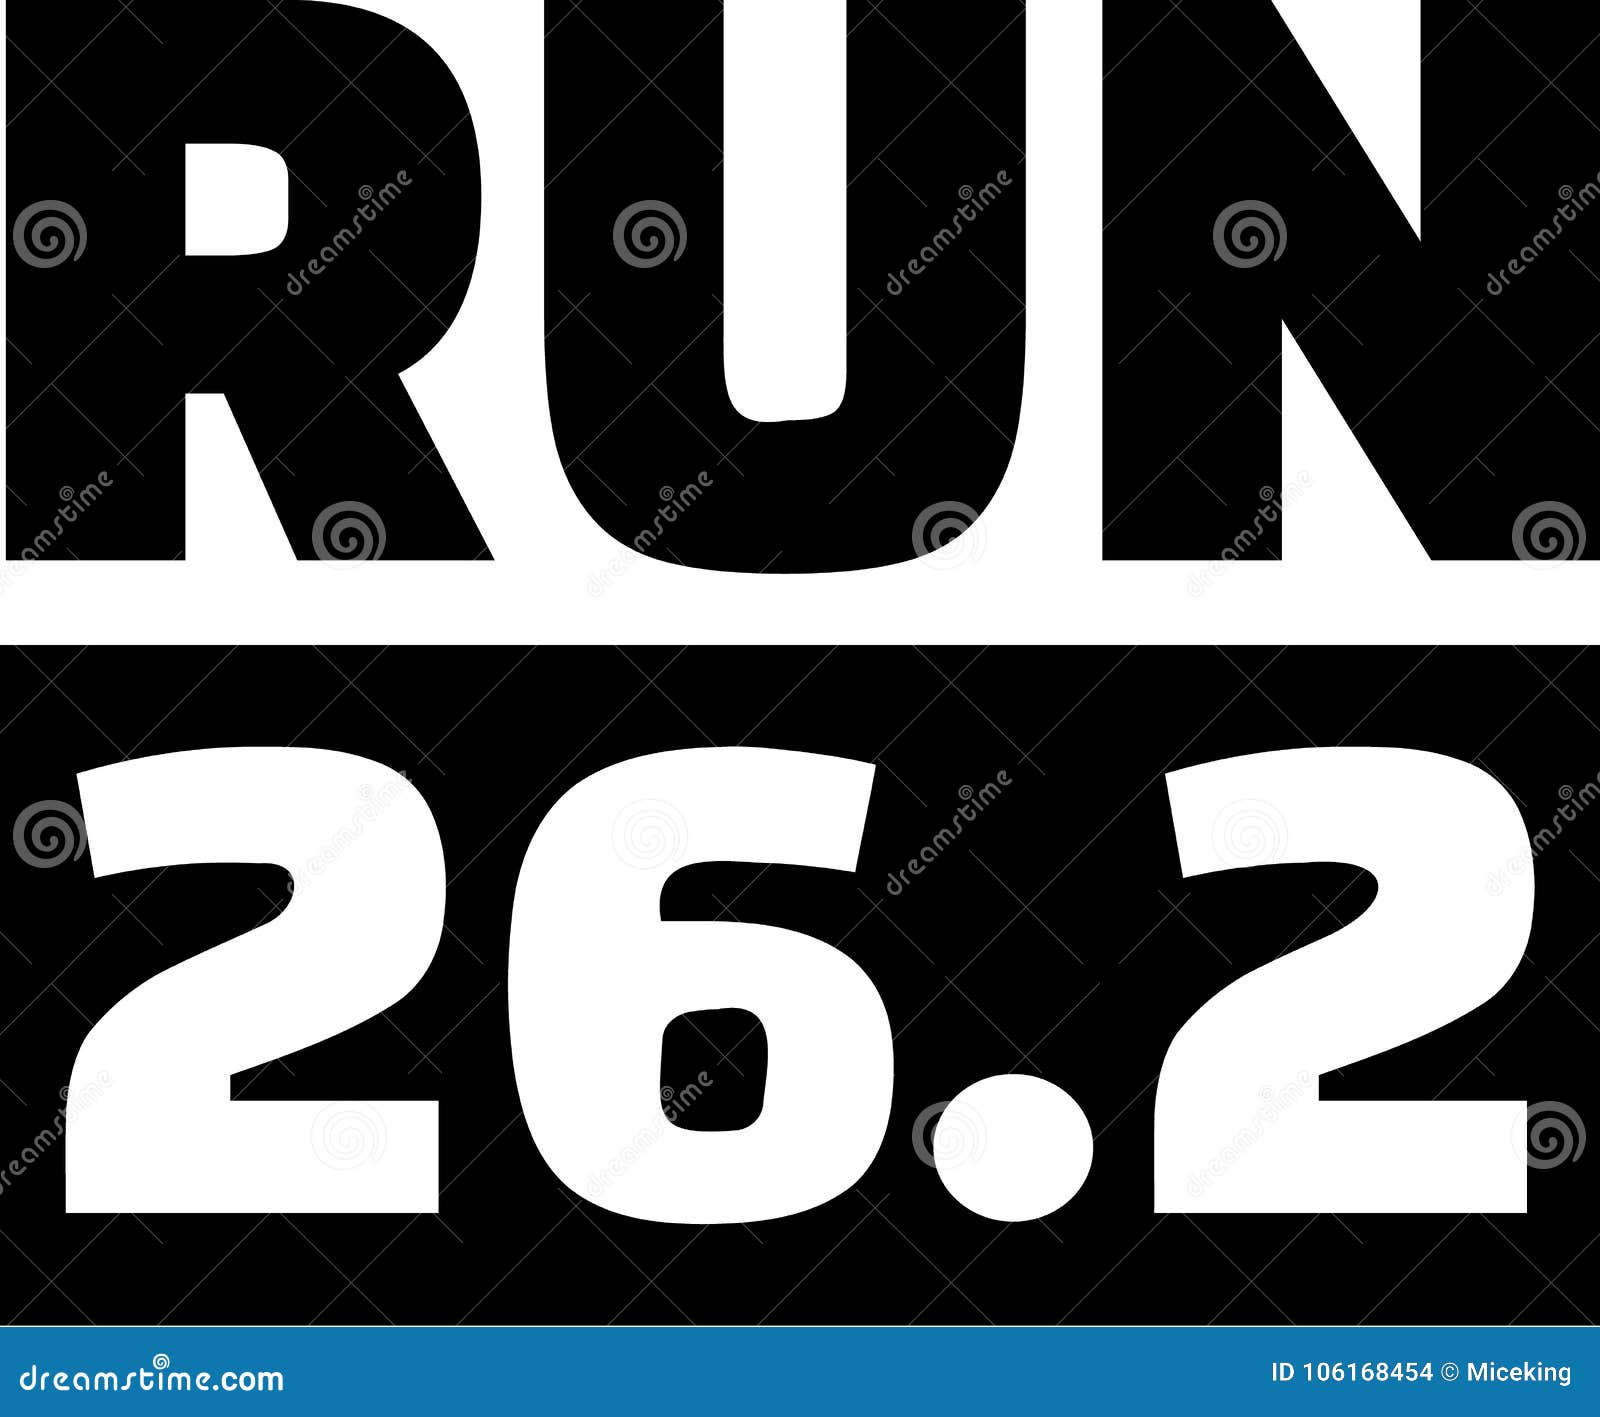 Running 26.2 Miles Marathon Stock Vector - Illustration of champion ...